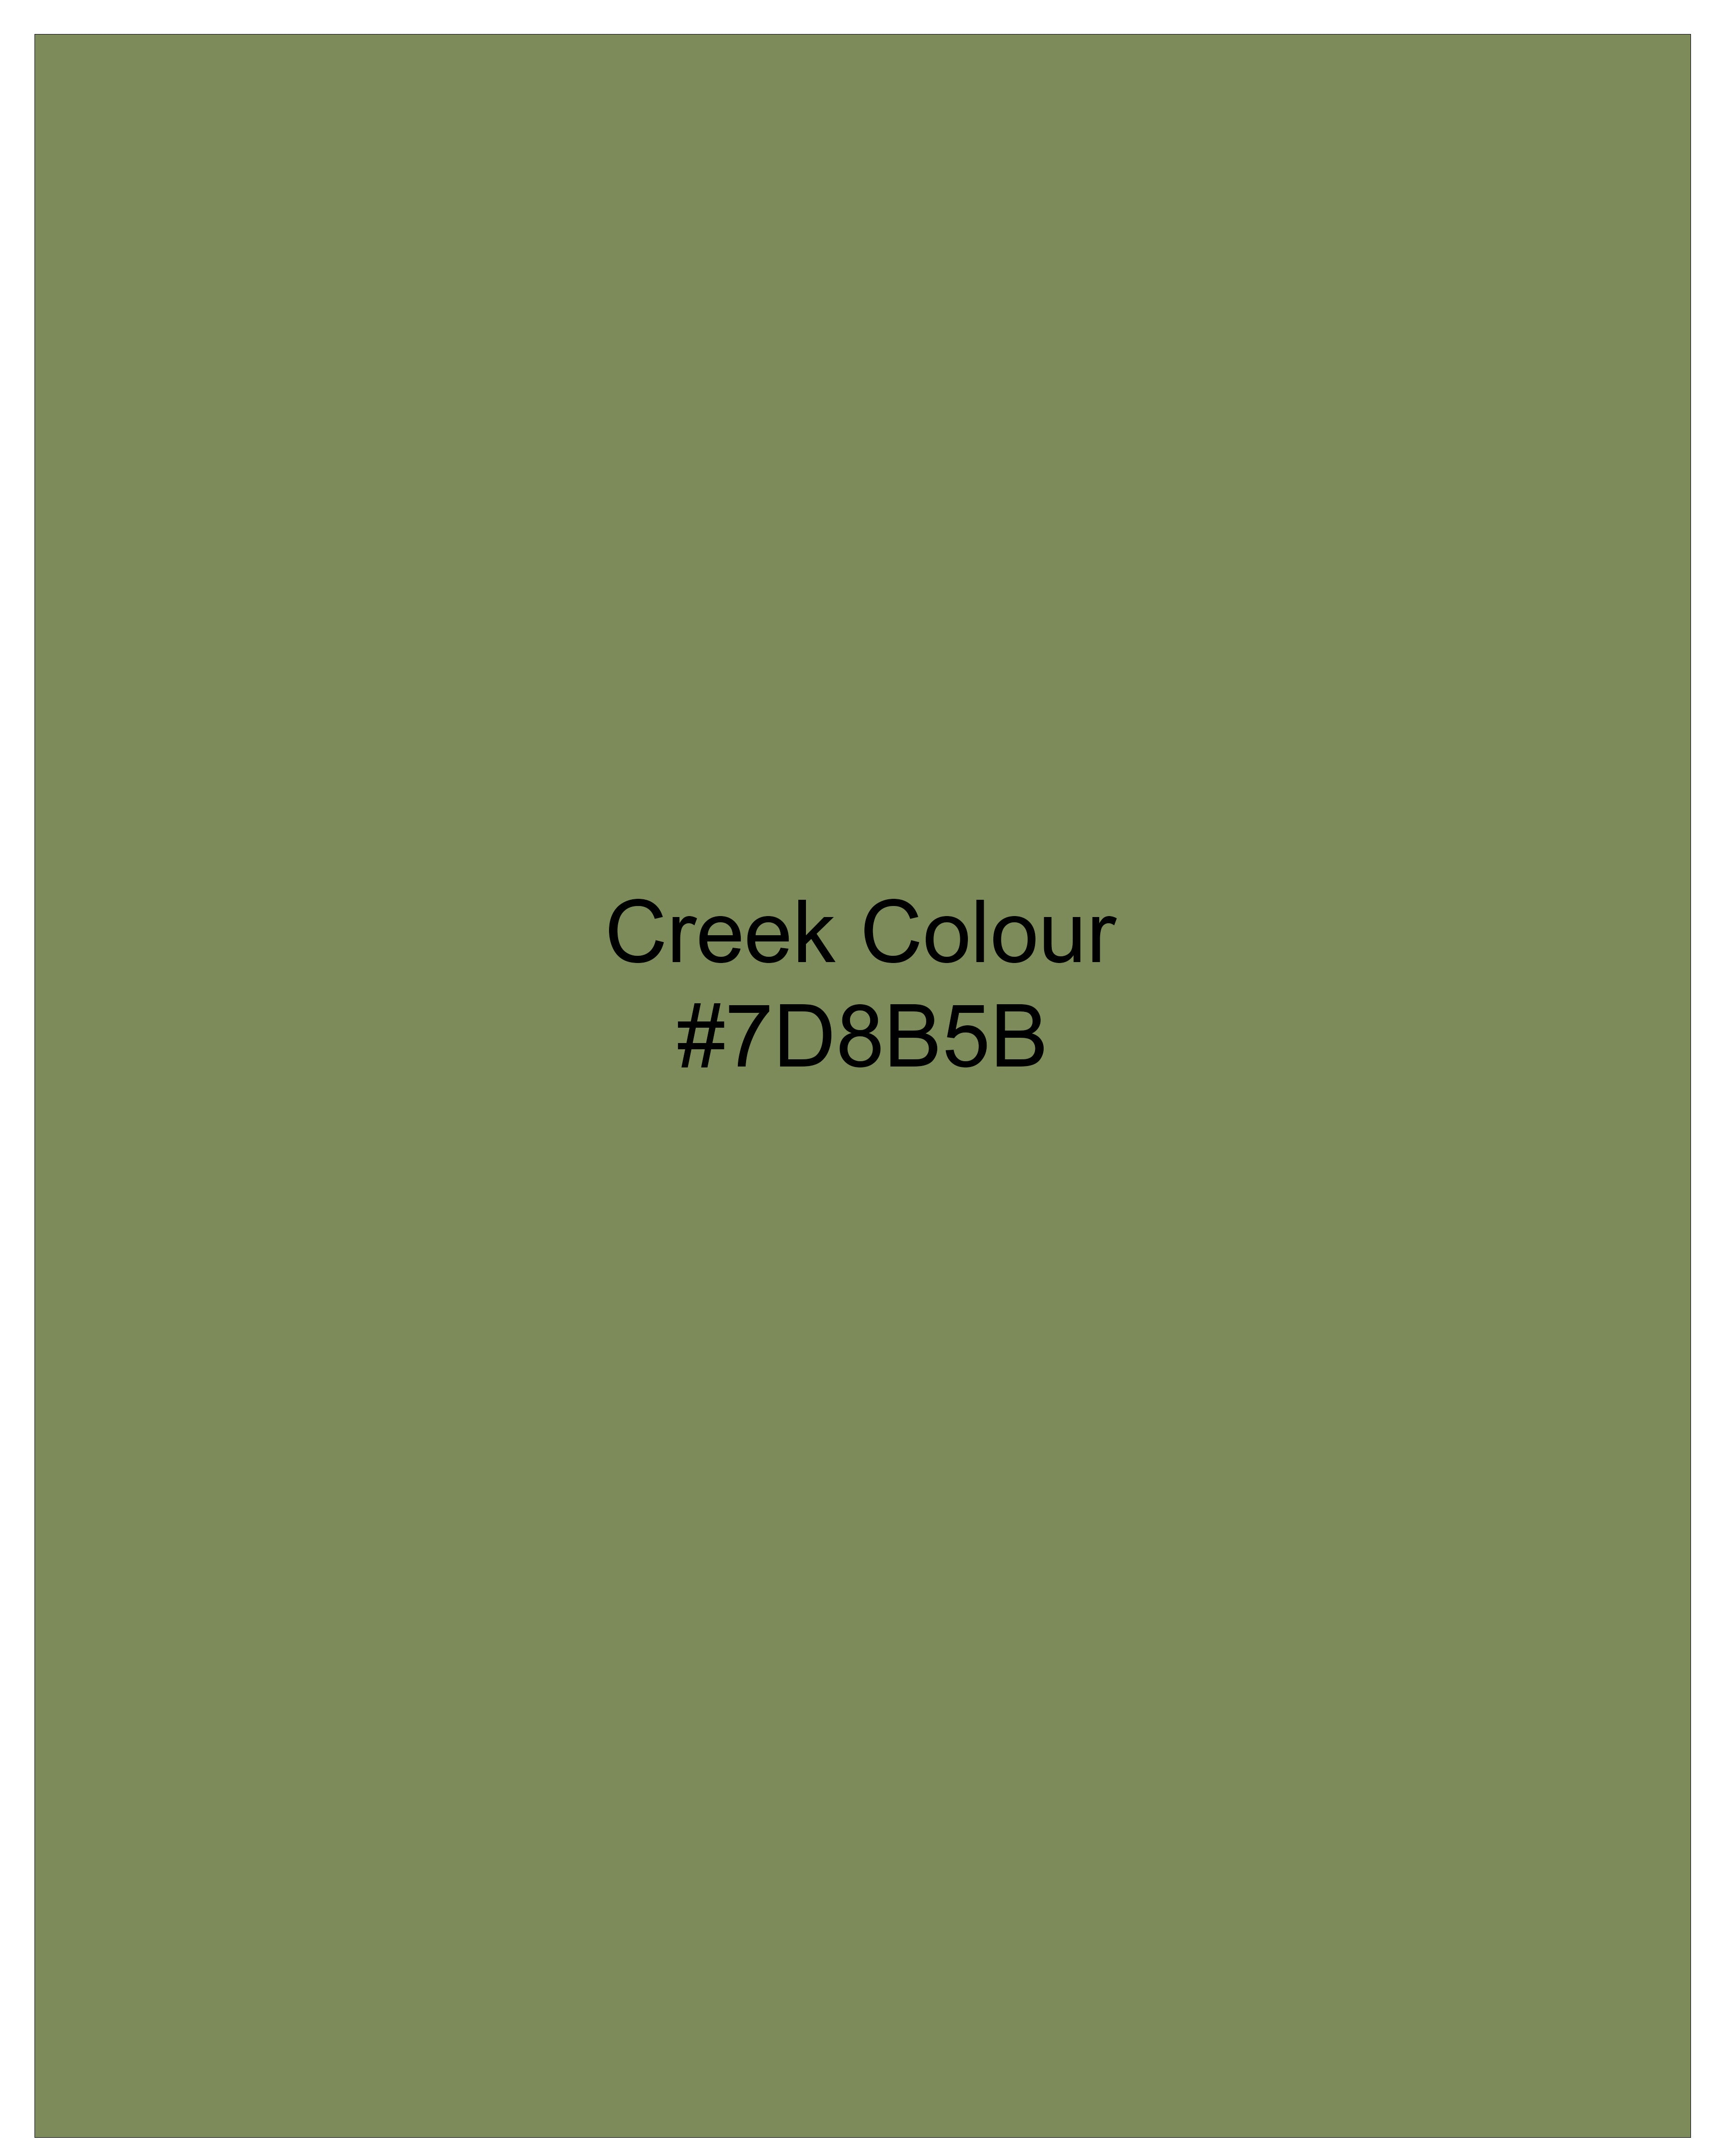 Creek Green Denim Shorts SR188-28, SR188-30, SR188-32, SR188-34, SR188-36, SR188-38, SR188-40, SR188-42, SR188-44